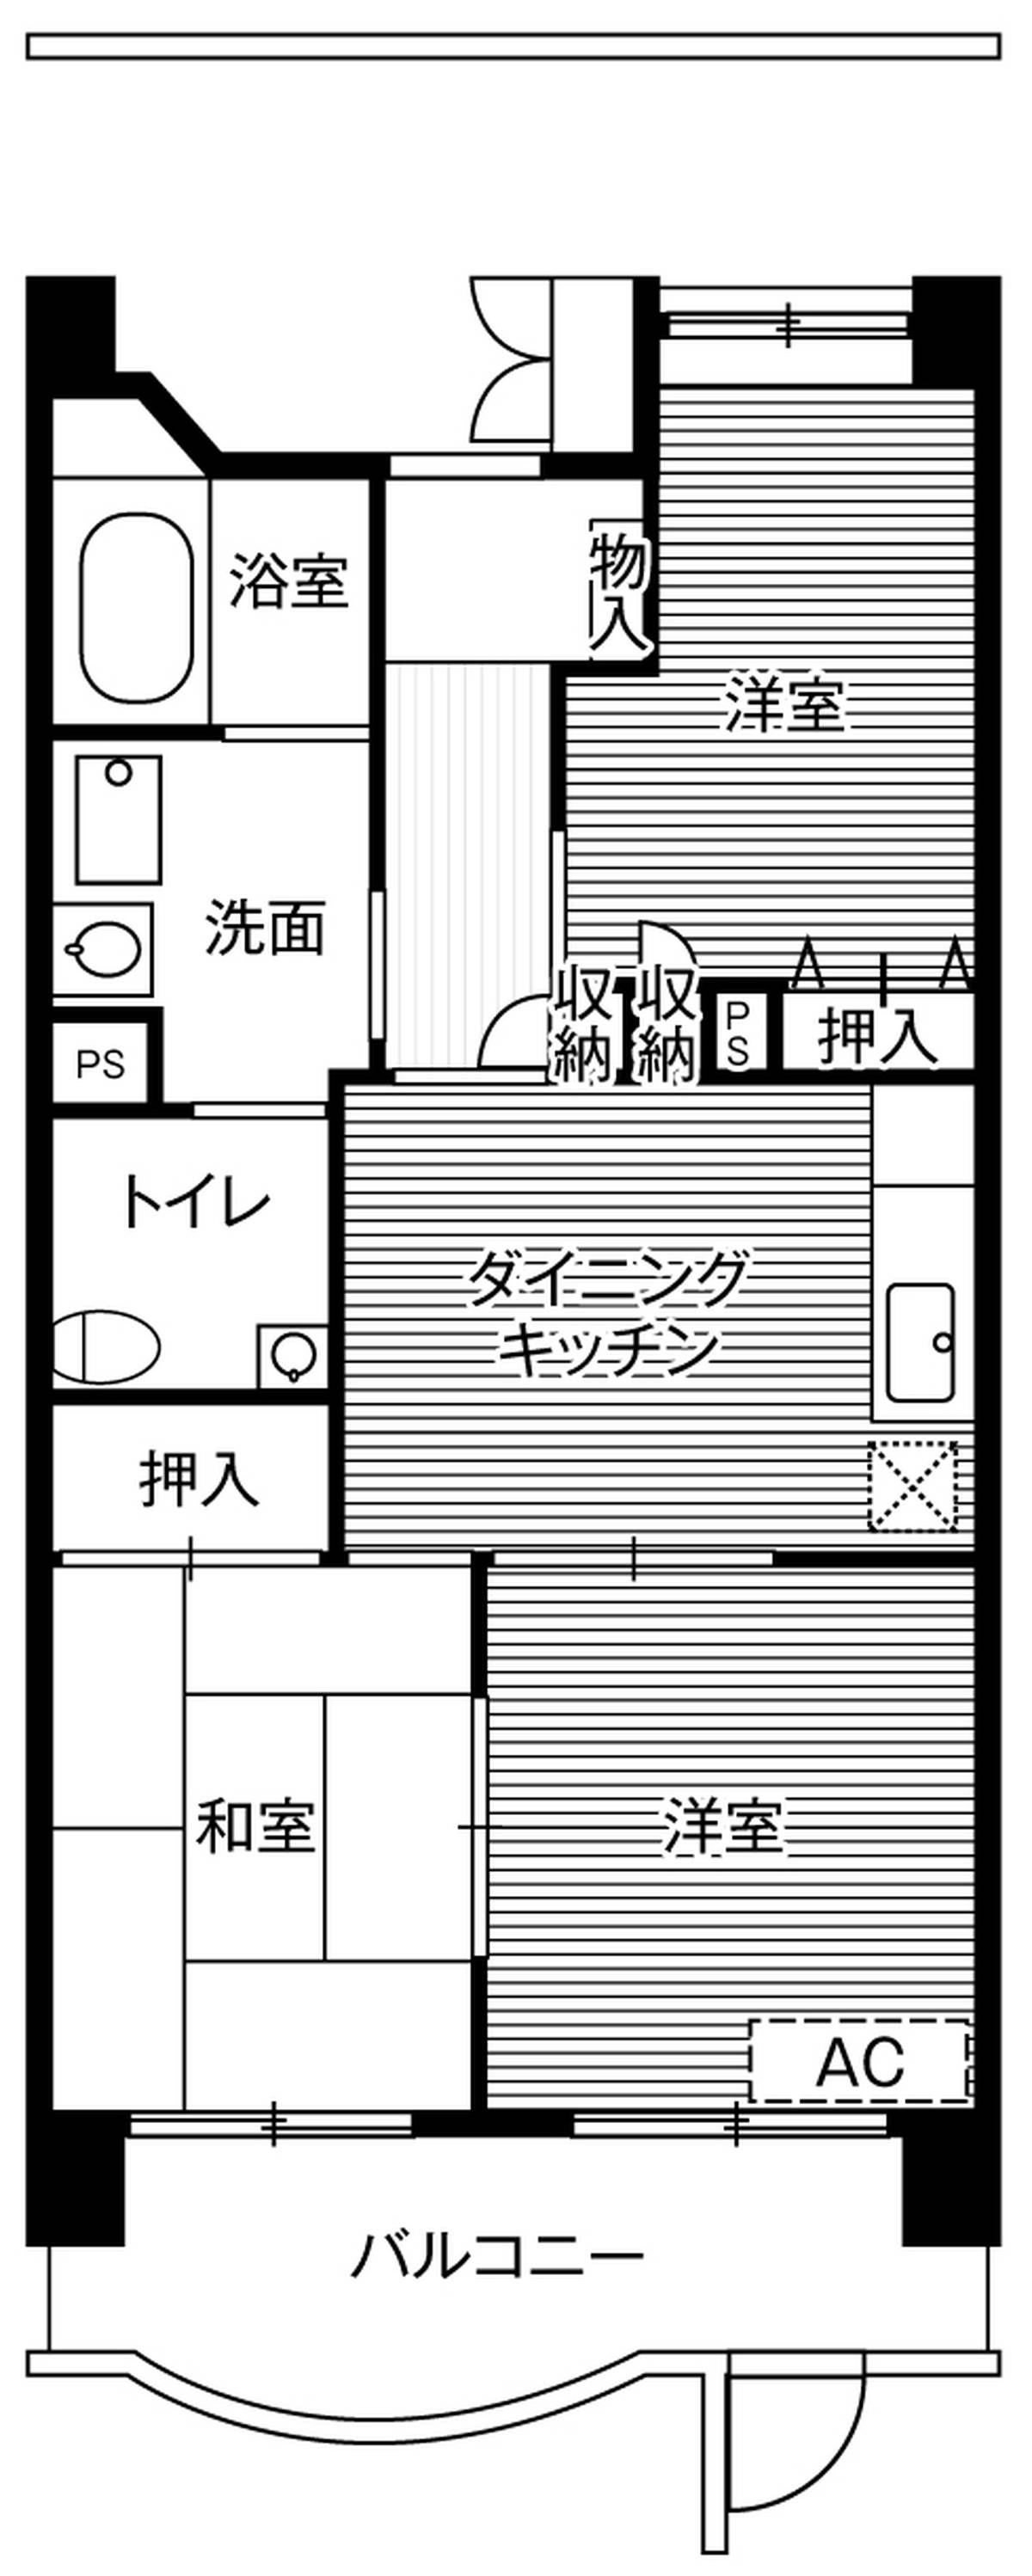 2LDK floorplan of Village House Shiomi Tower in Koto-ku